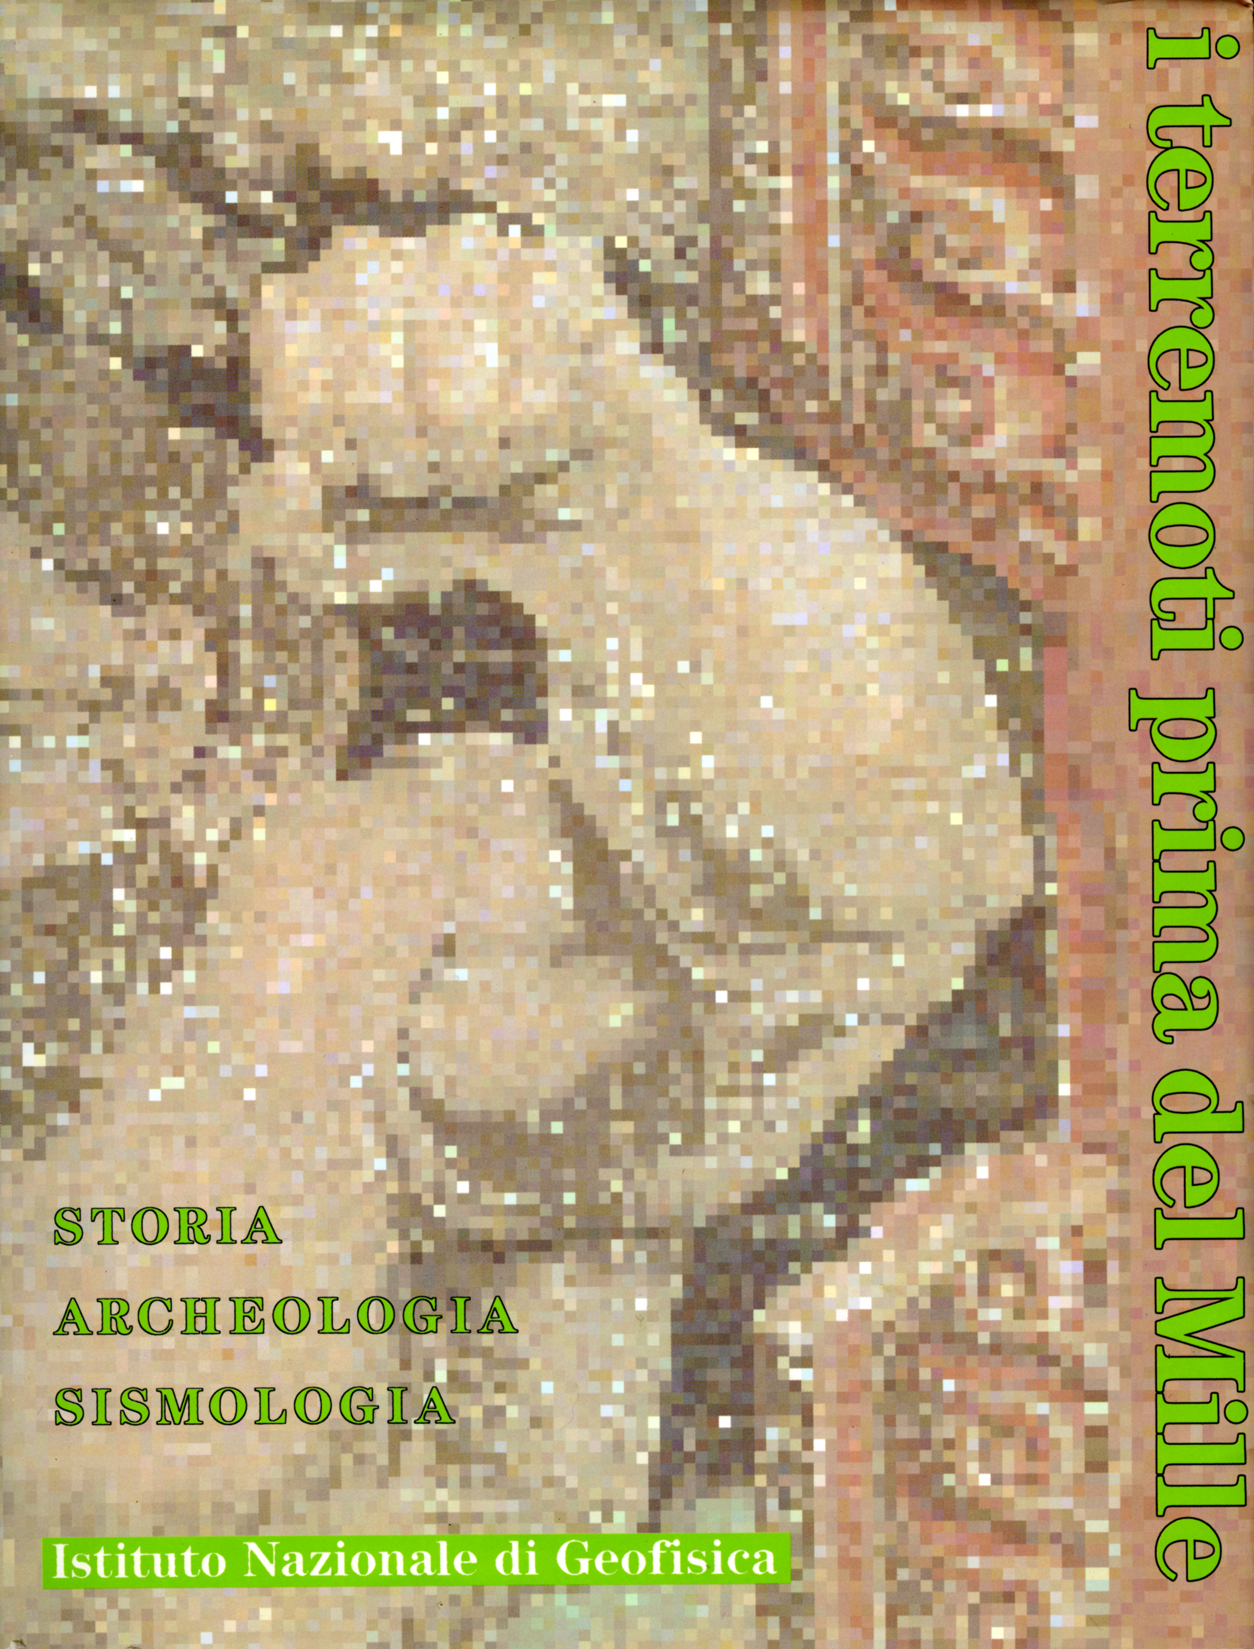 Emanuela Guidoboni (a cura di) - I terremoti prima del Mille in Italia e nell’area mediterranea. Storia archeologia sismologia (1989)